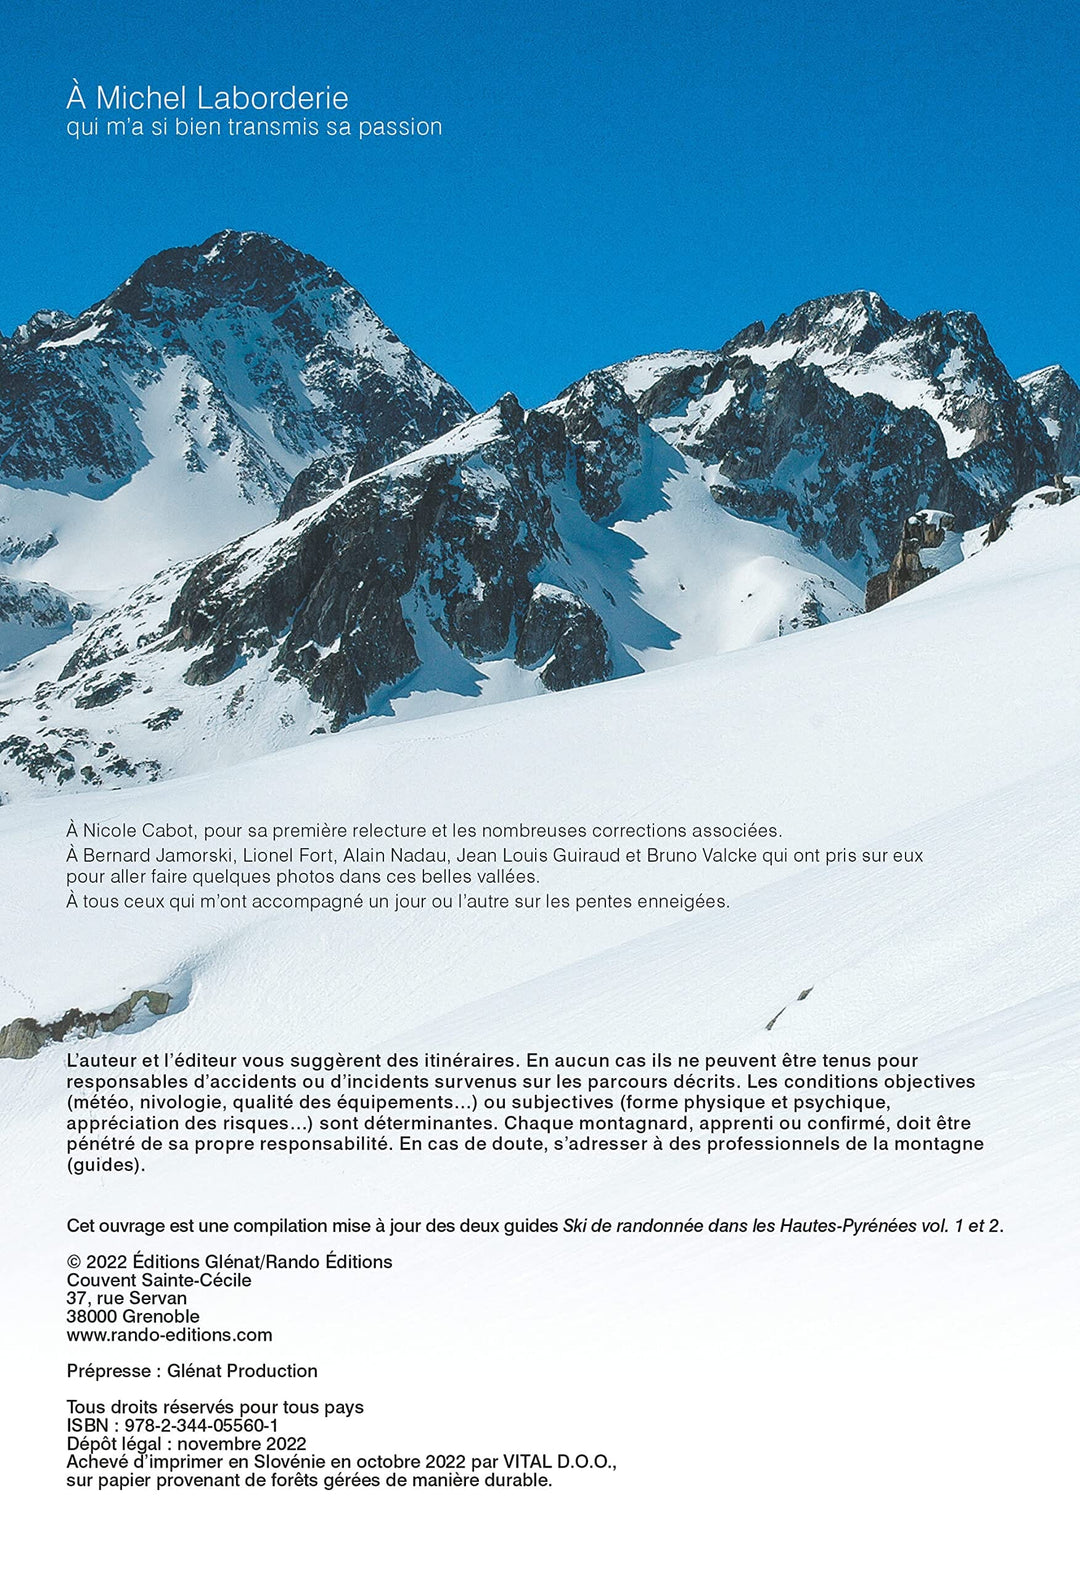 Guide de ski de randonnée - Hautes-Pyrénées, 128 itinéraires | Rando Editions guide de randonnée Rando Editions 